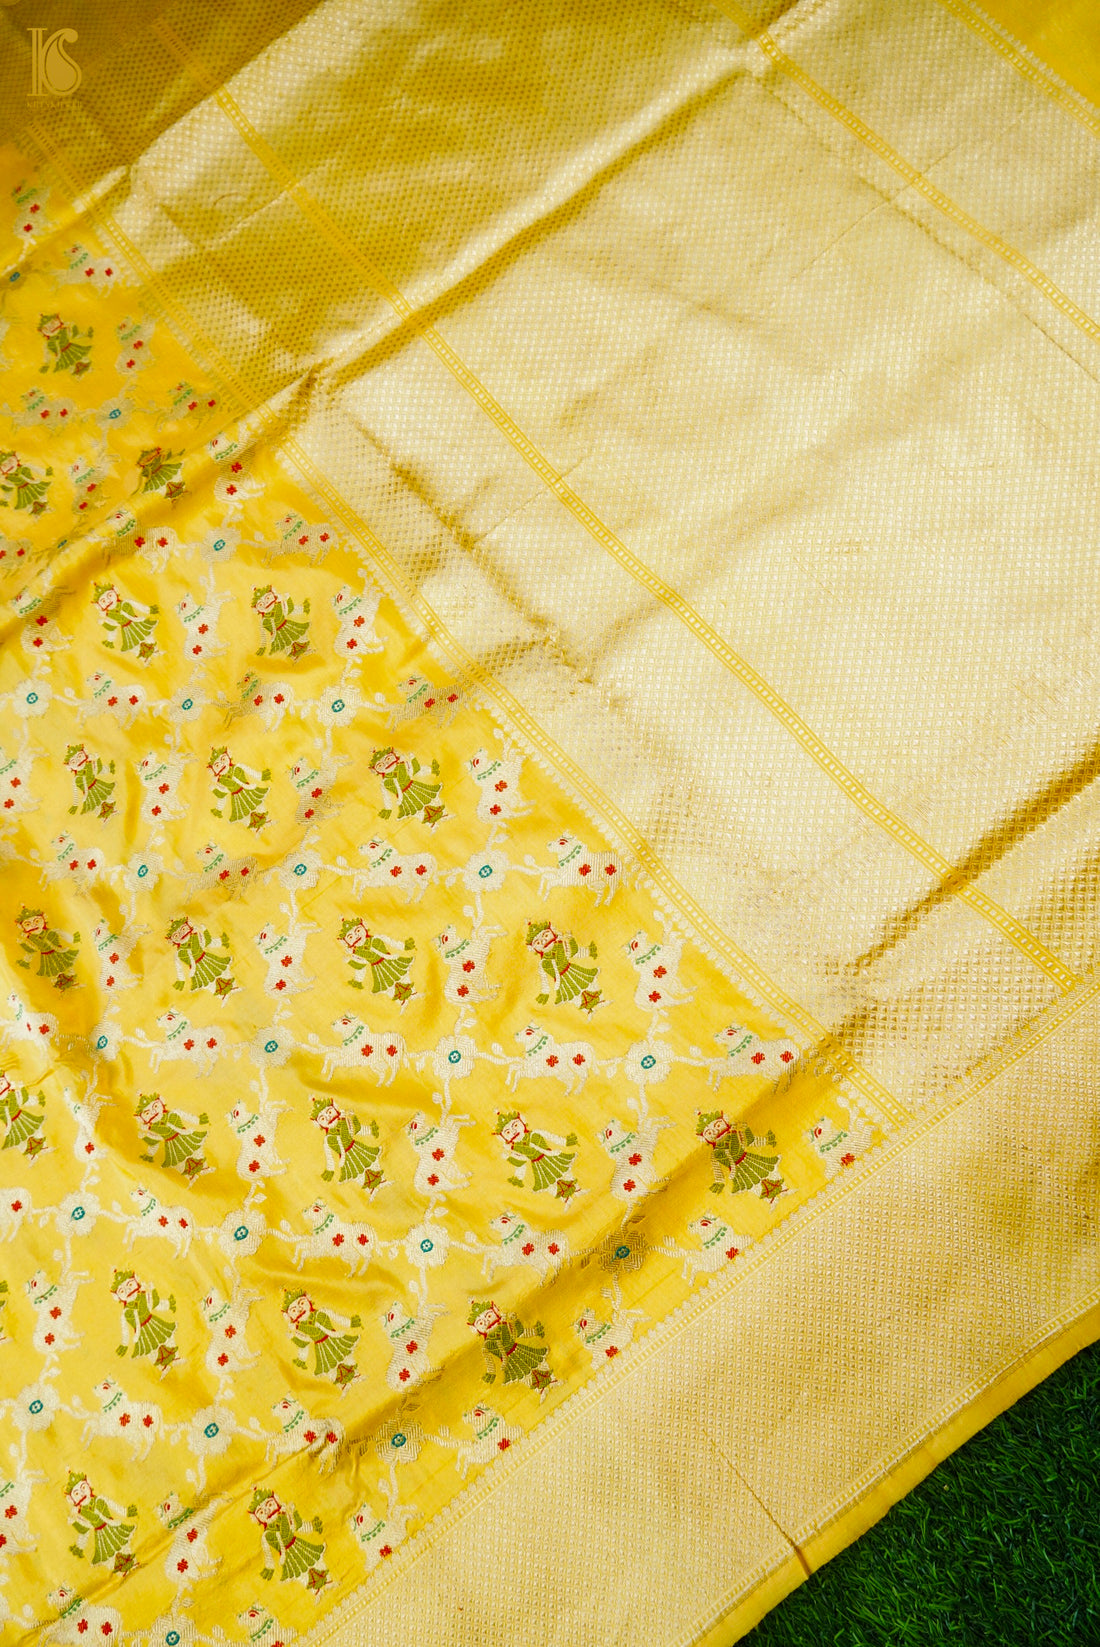 Handloom Banarasi Katan Silk Nandi Jaal Saree